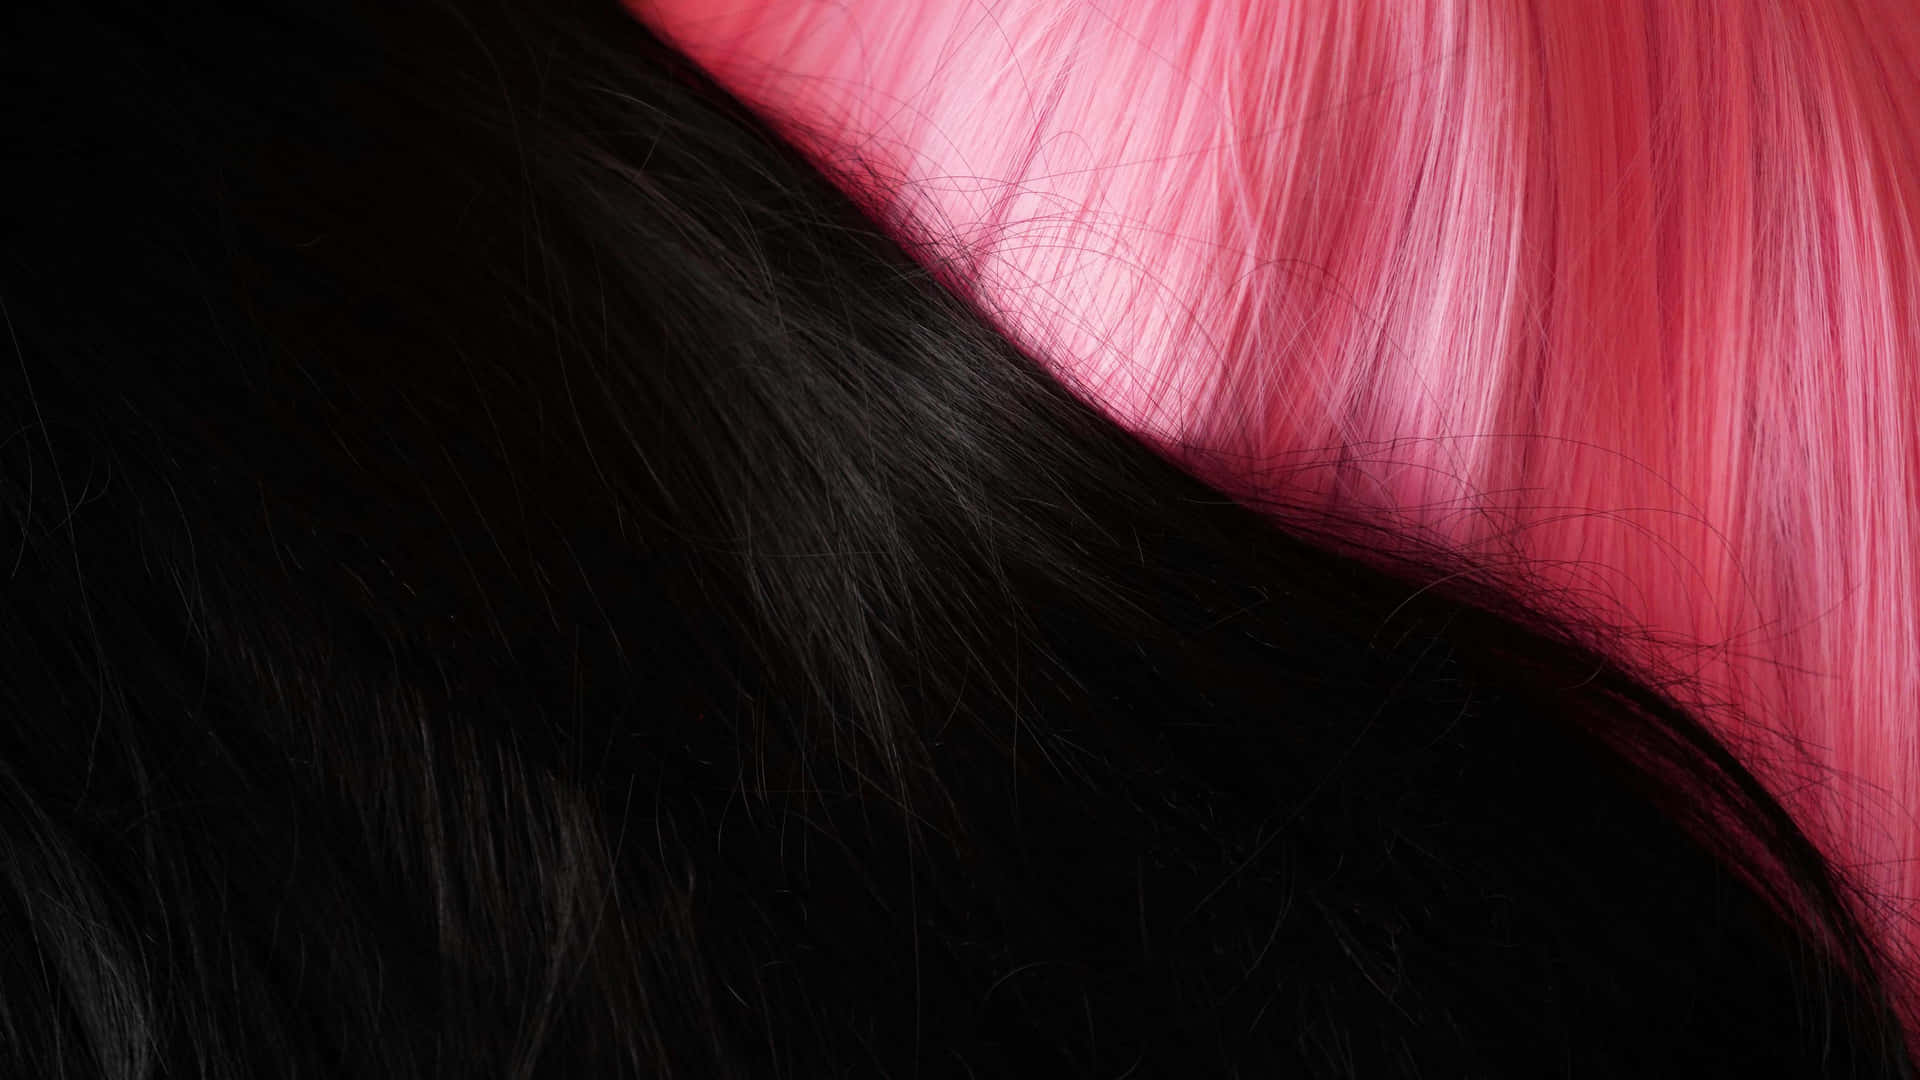 Blackto Pink Hair Transition Wallpaper